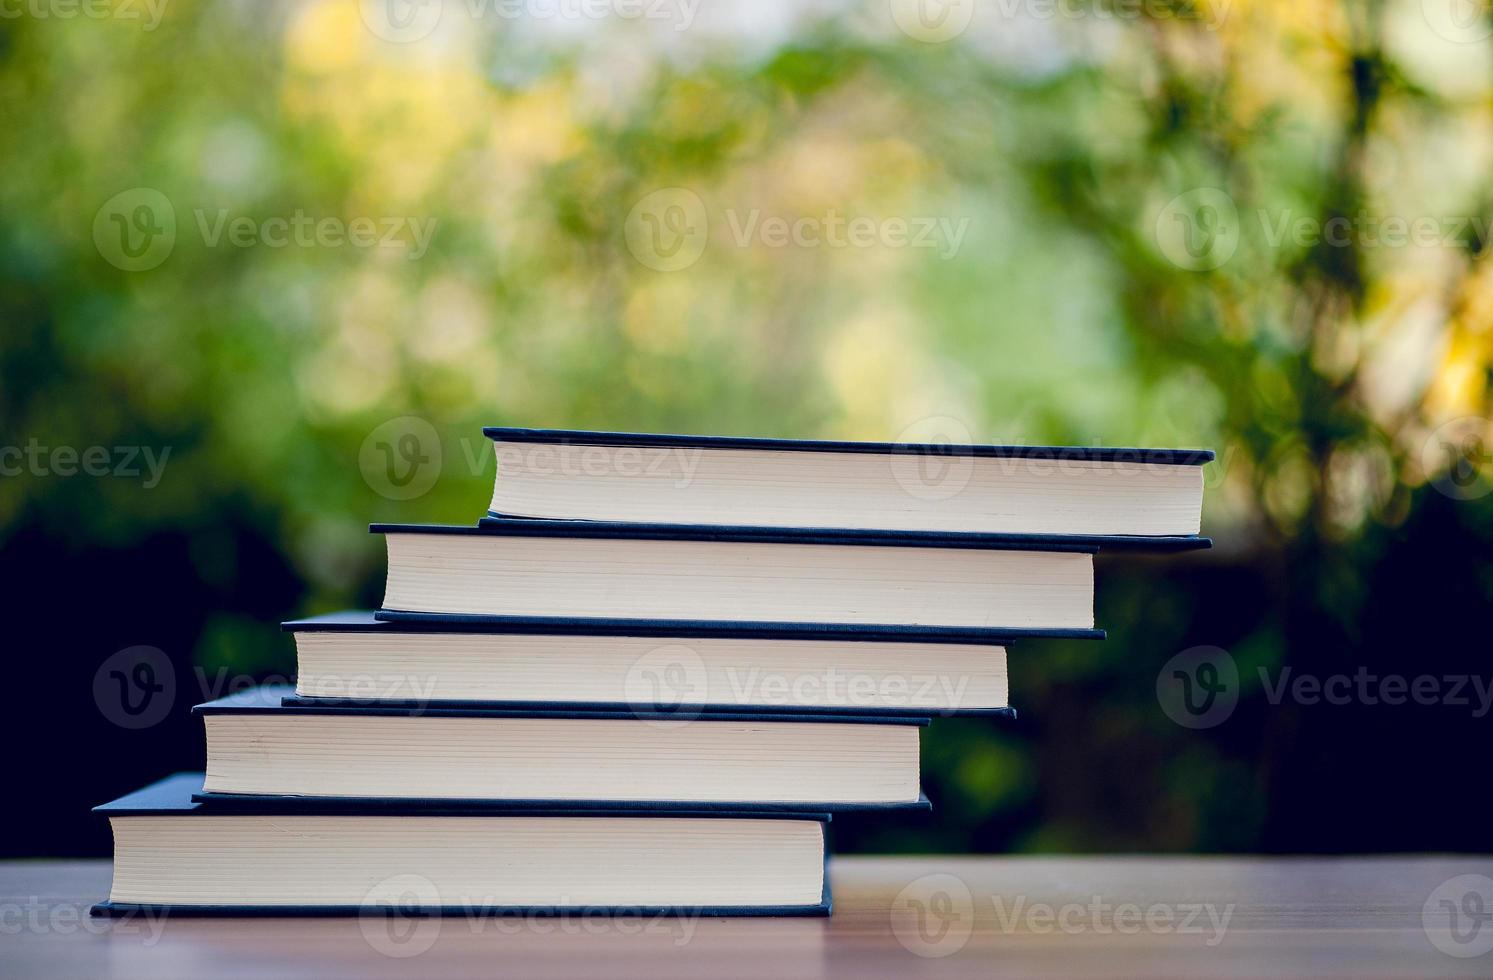 muchos libros se colocan sobre la mesa, útiles escolares. concepto de educación foto